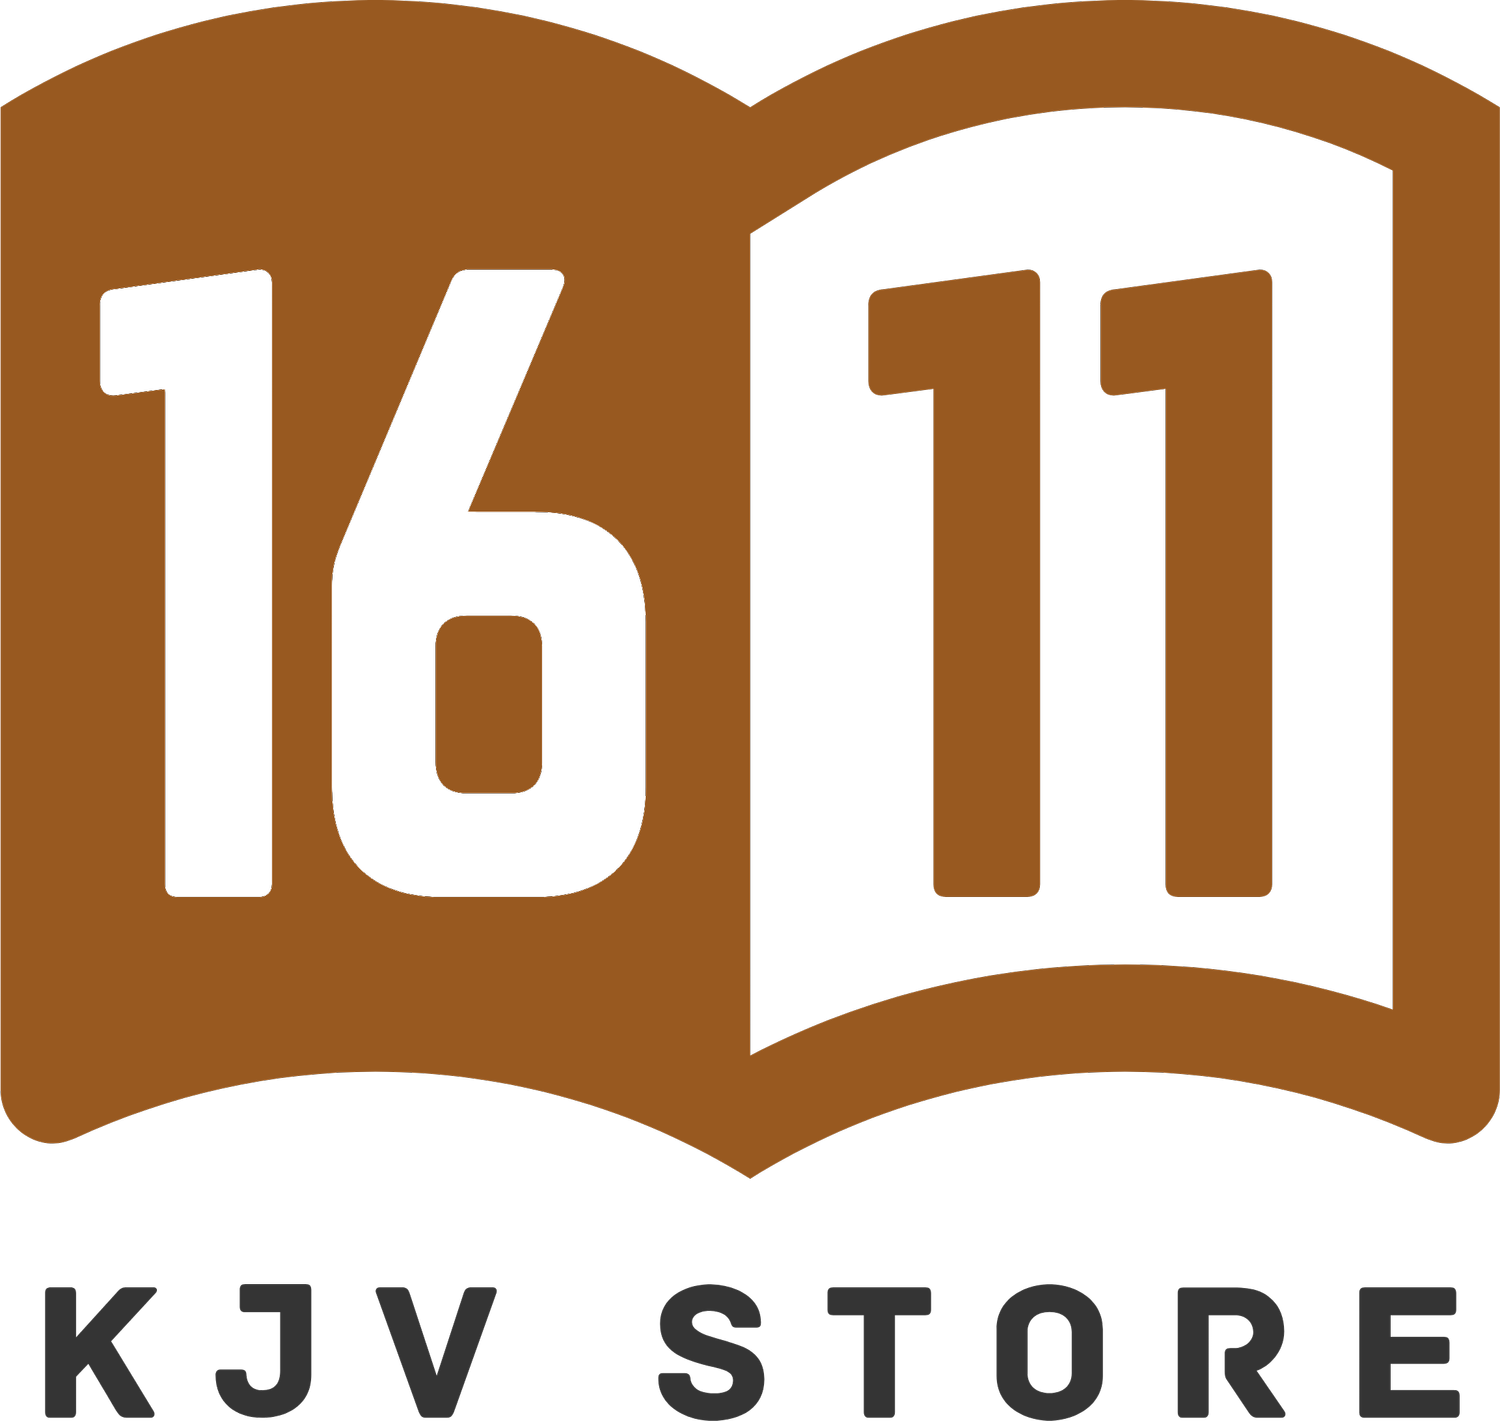 1611 KJV Store